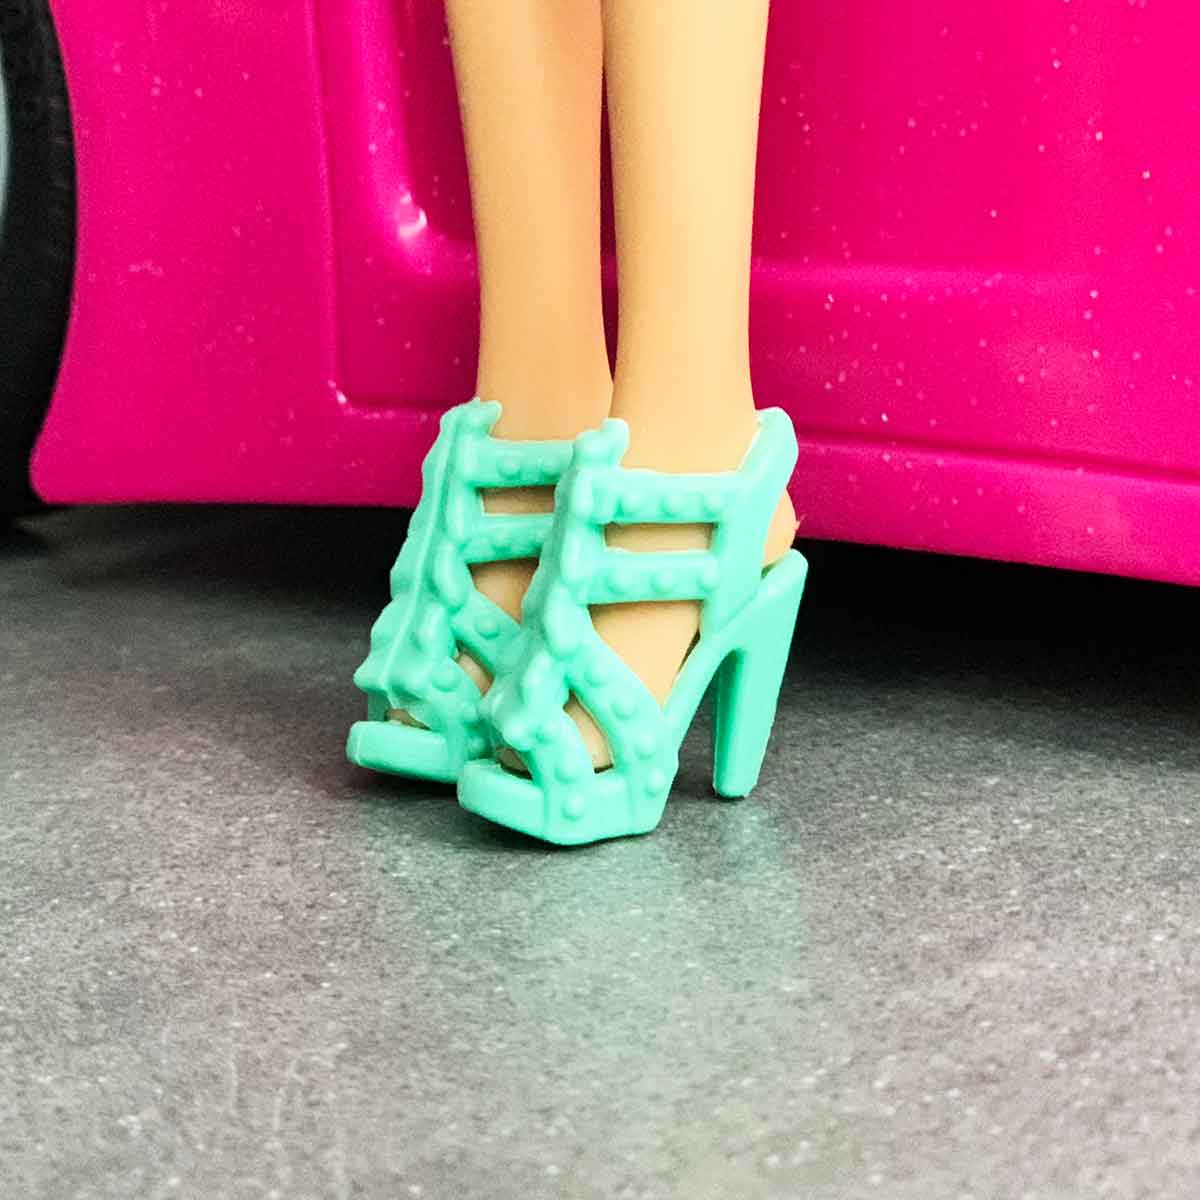 Barbie schoenen mint groene pumps met riemen van spikkelmotief